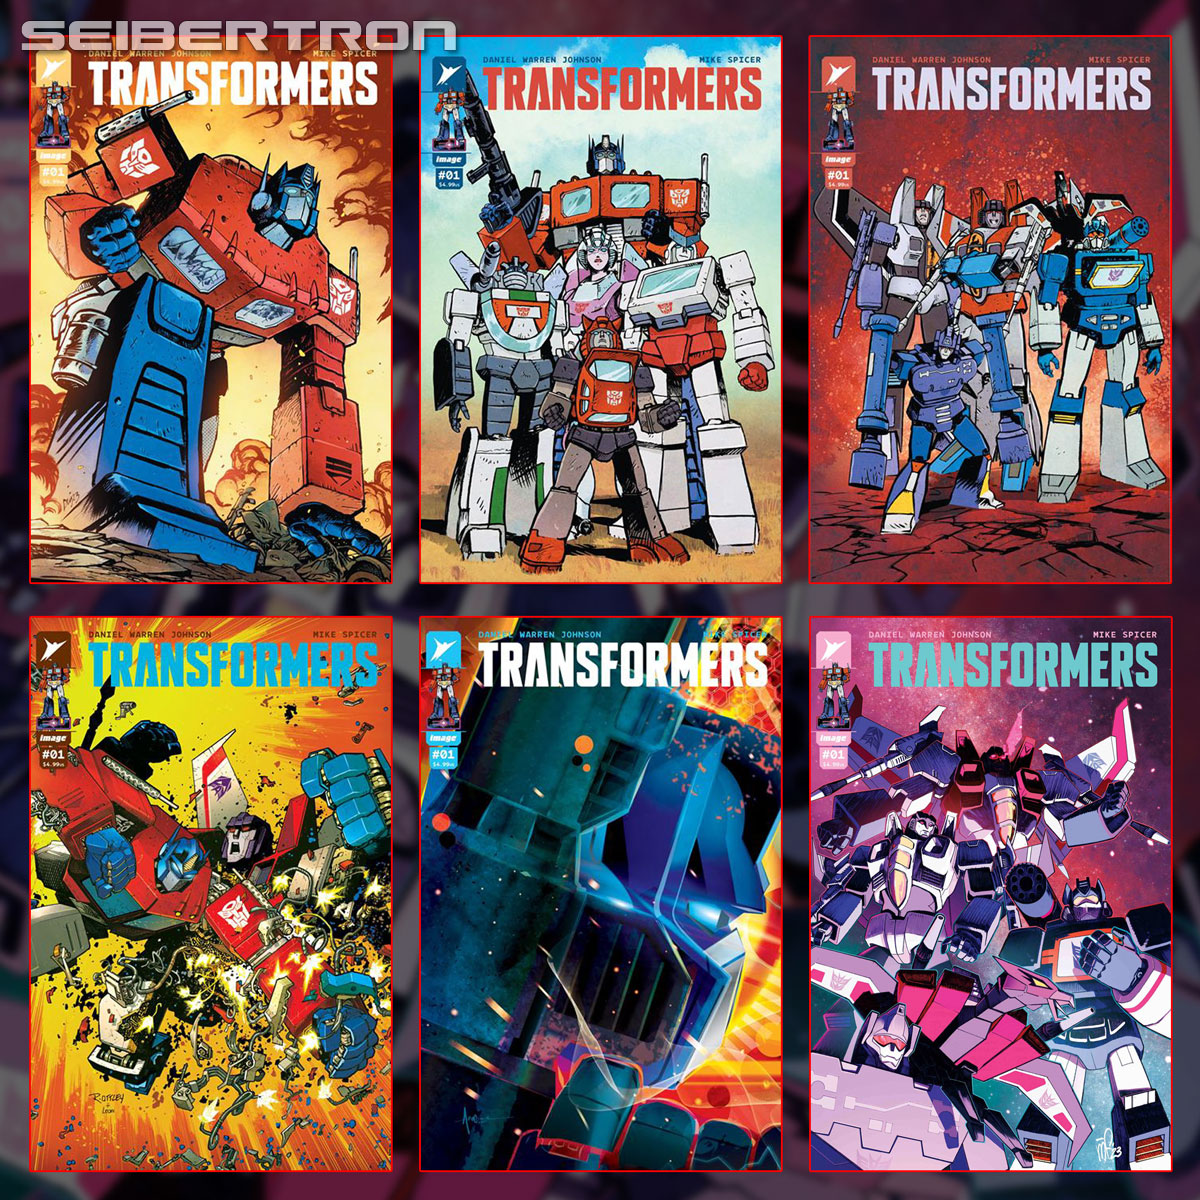 TRANSFORMERS #1 6 Cover Set including Seibertron.com Exclusive Image Comics 2023